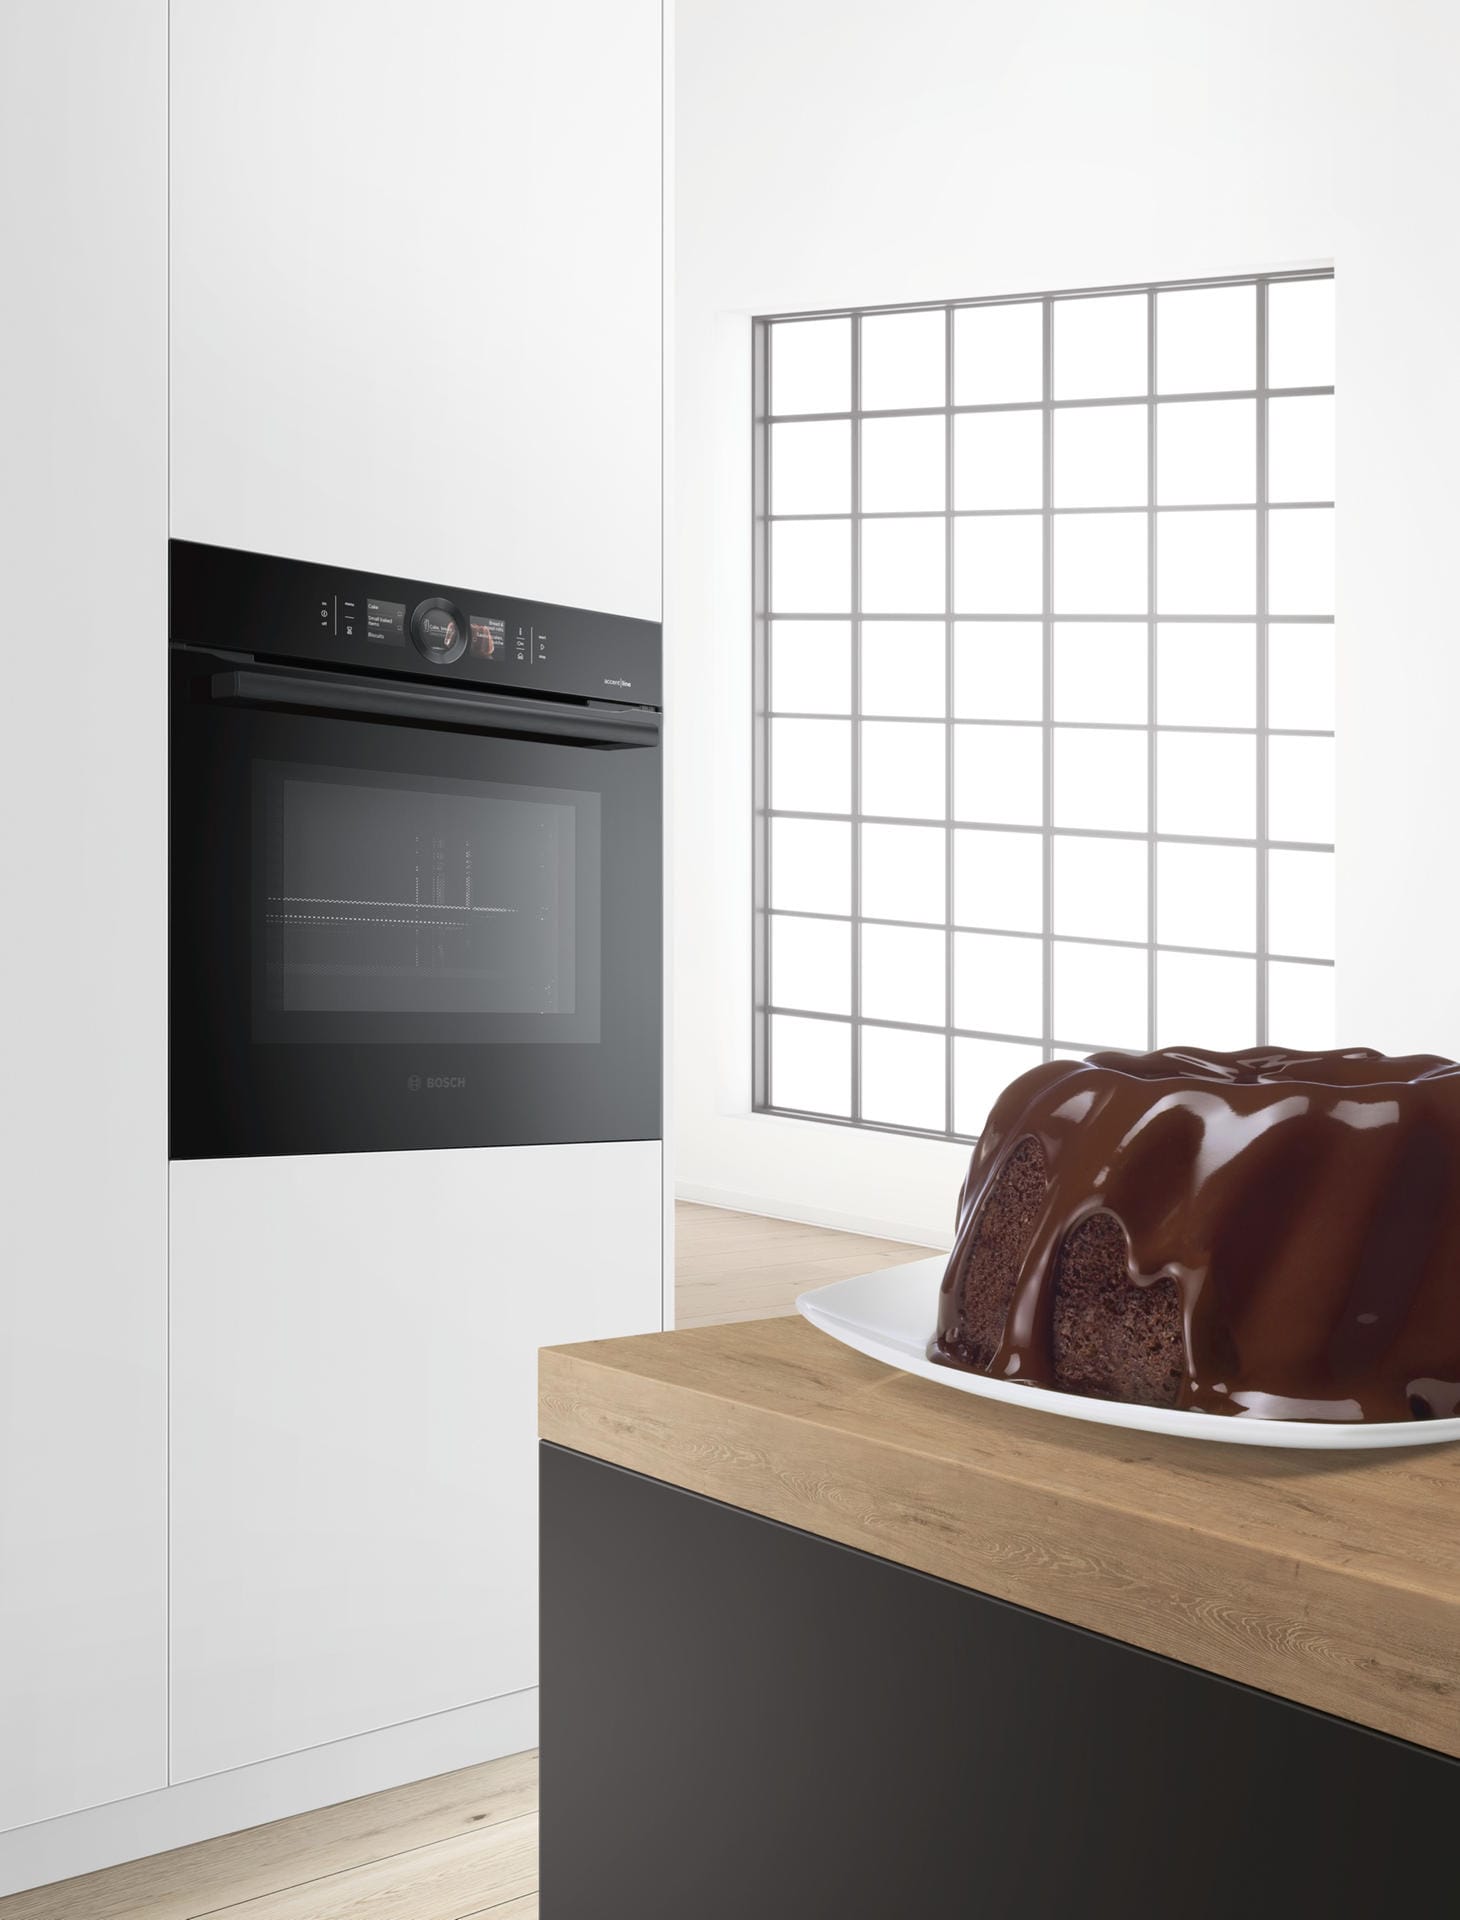 Die Serie-8-Backöfen der accent line mit Home Connect bekommen nun eine künstliche Intelligenz. Damit der Kuchen auch so gar wird, wie der Nutzer es am liebsten hat, analysiert und speichert das Gerät sein Nutzungsverhalten.